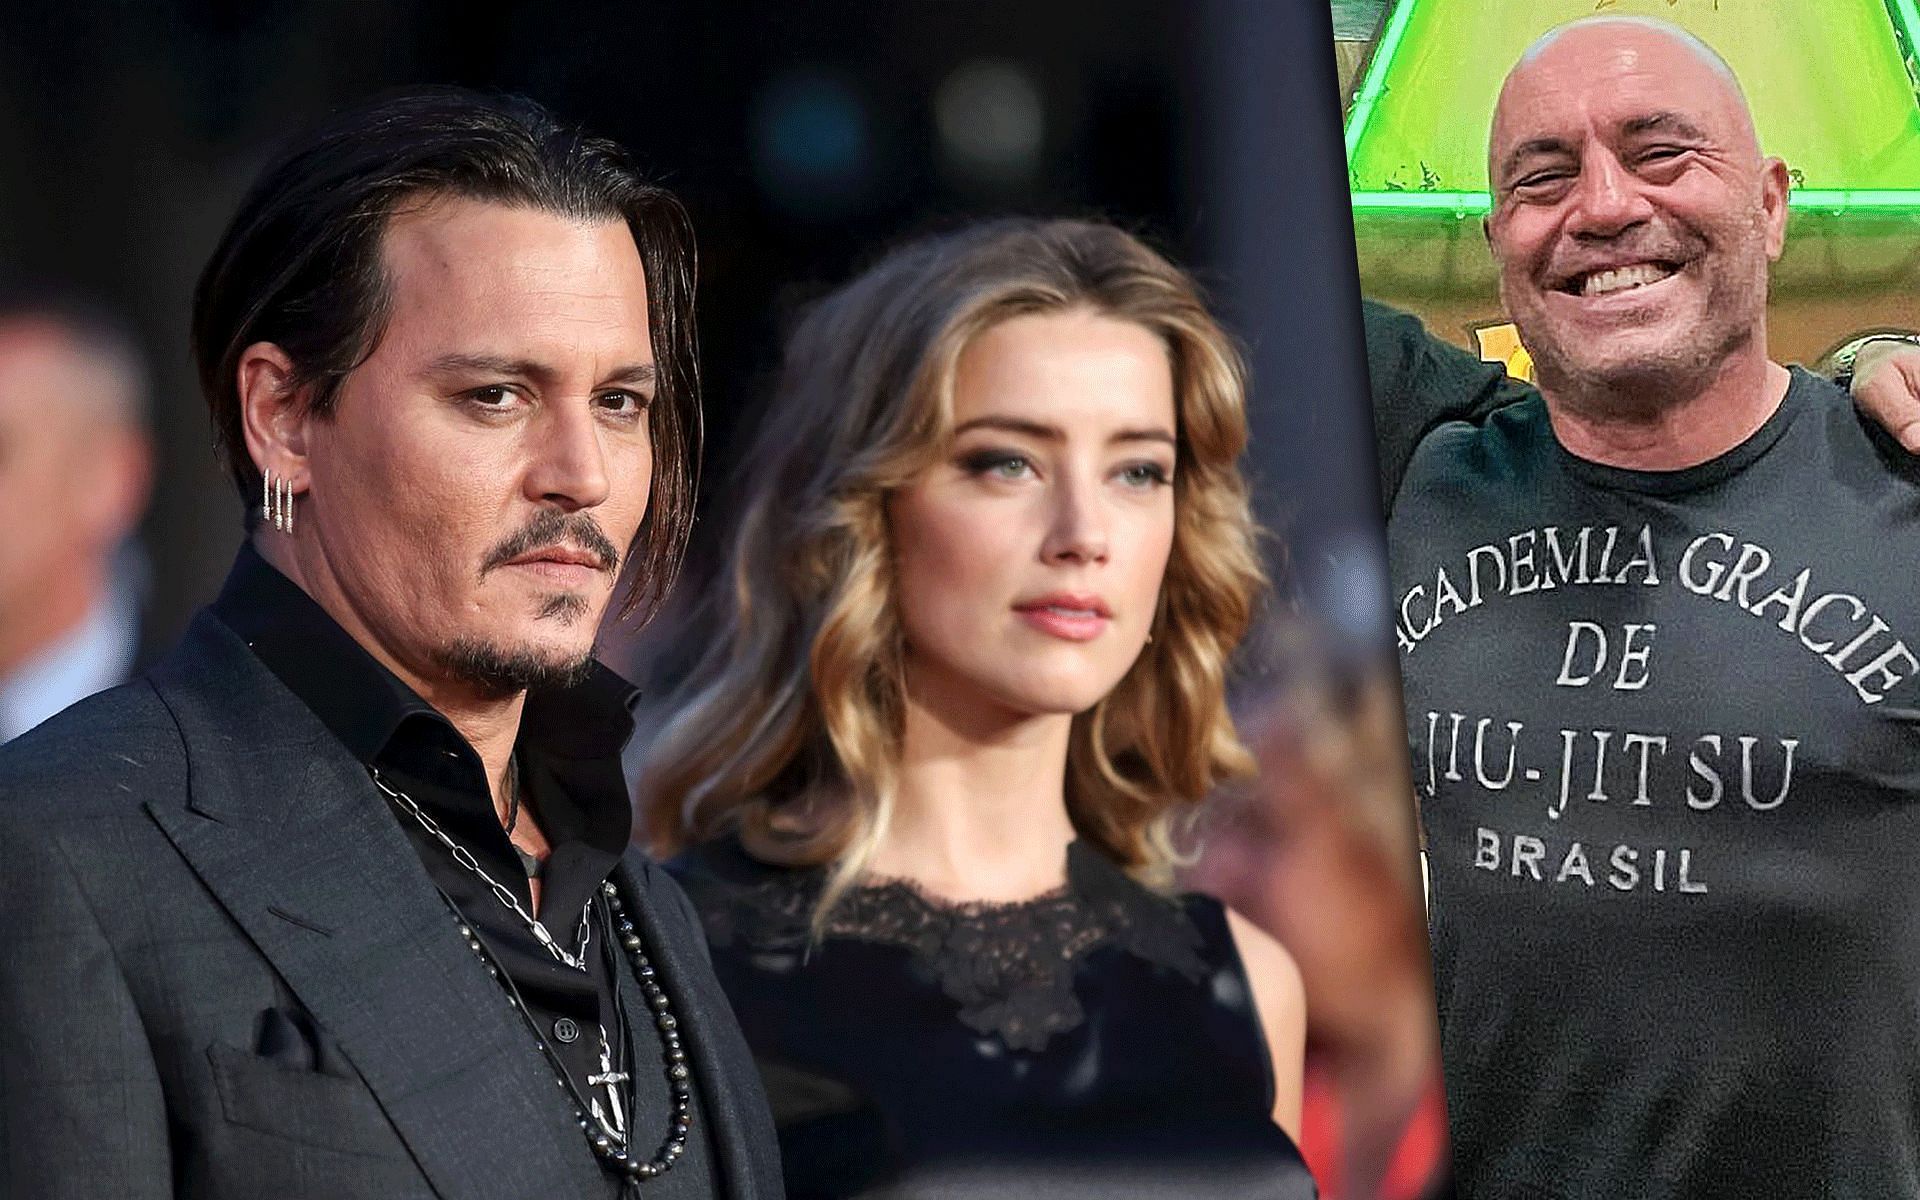 Johnny Depp and Amber Heard (L) (via vox.com), Joe Rogan (R) [via @joerogan on Instagram]